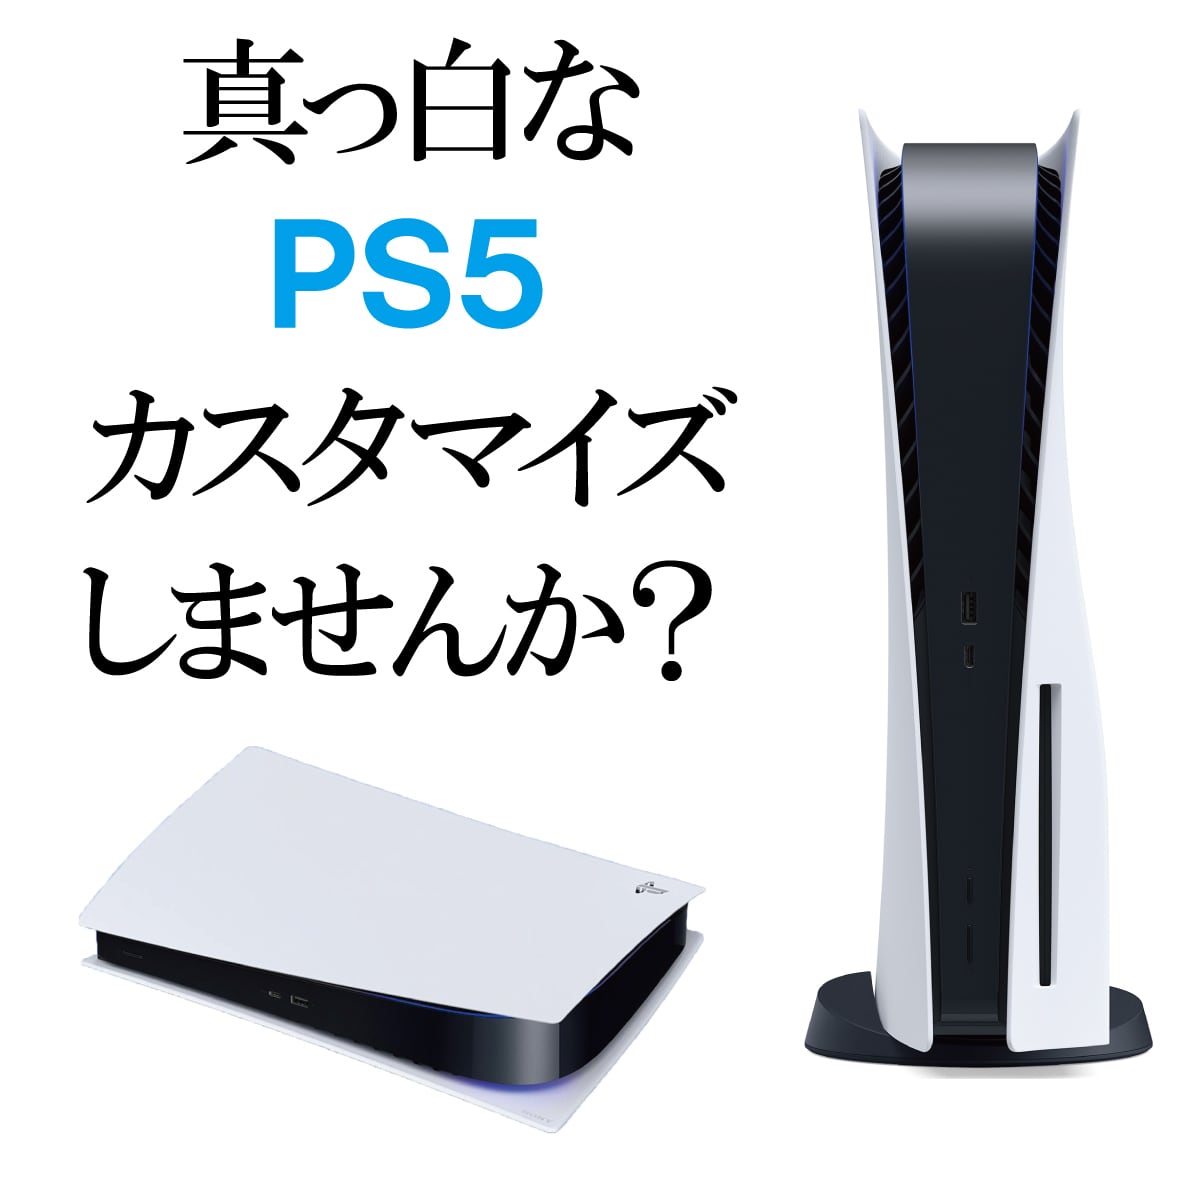 【即日発送】PlayStation5 プレイステーション5 PS5 通常版